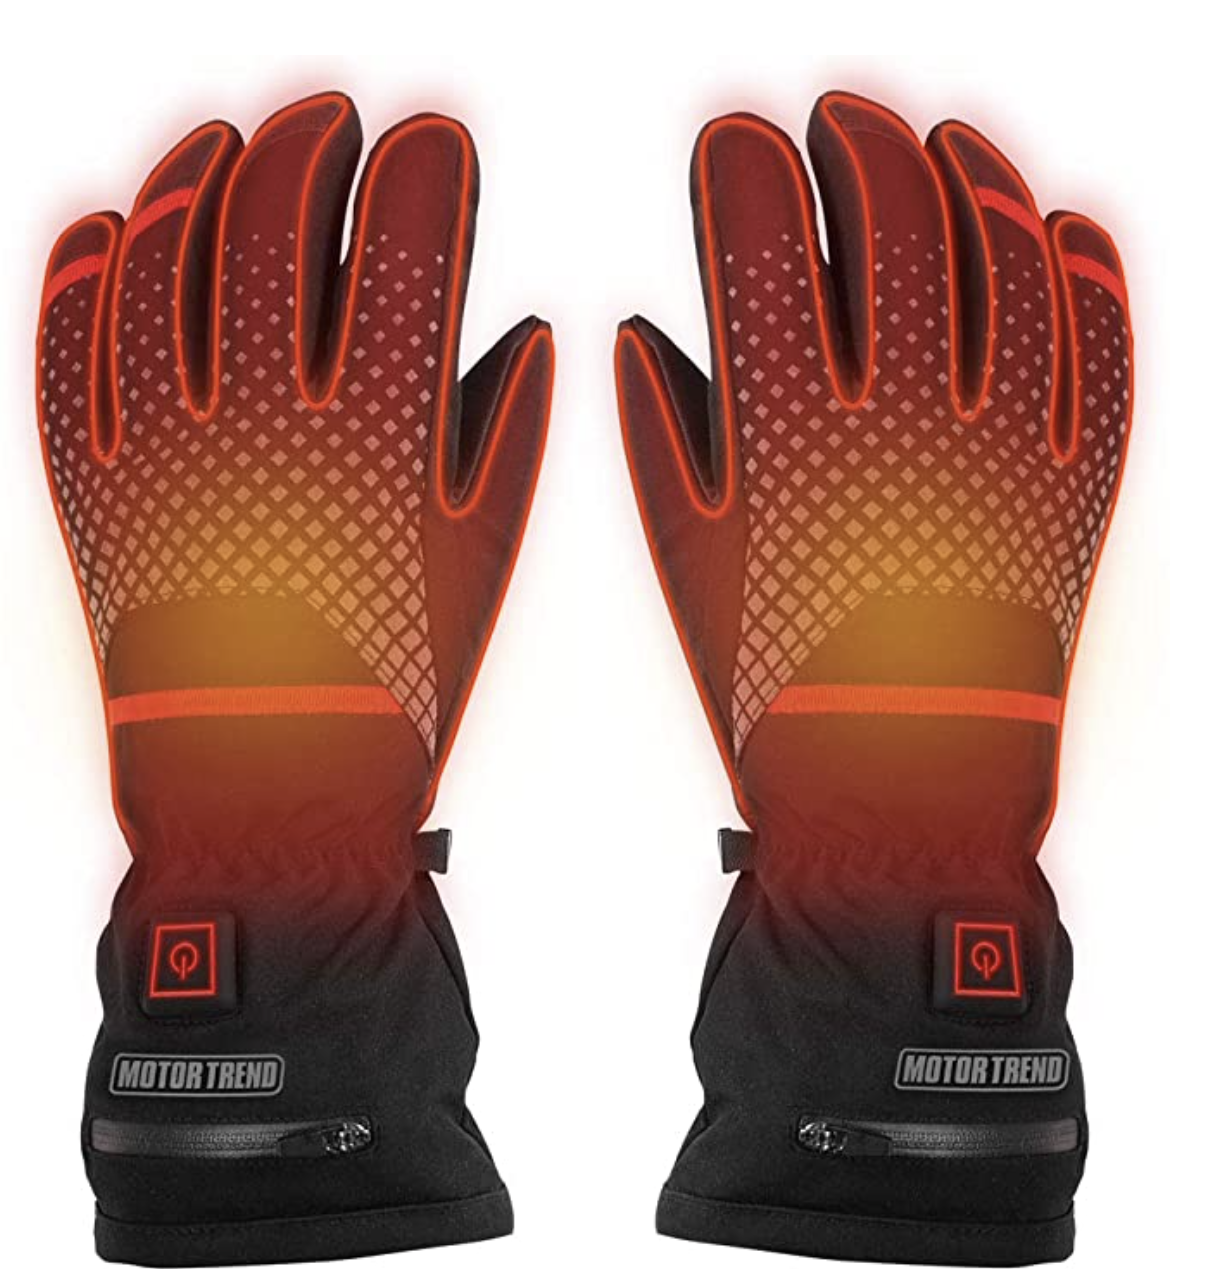 Motor Trend Max-Heat Beheizte Handschuhe - Wiederaufladbare Handwärmer mit 3 Temperatureinstellungen